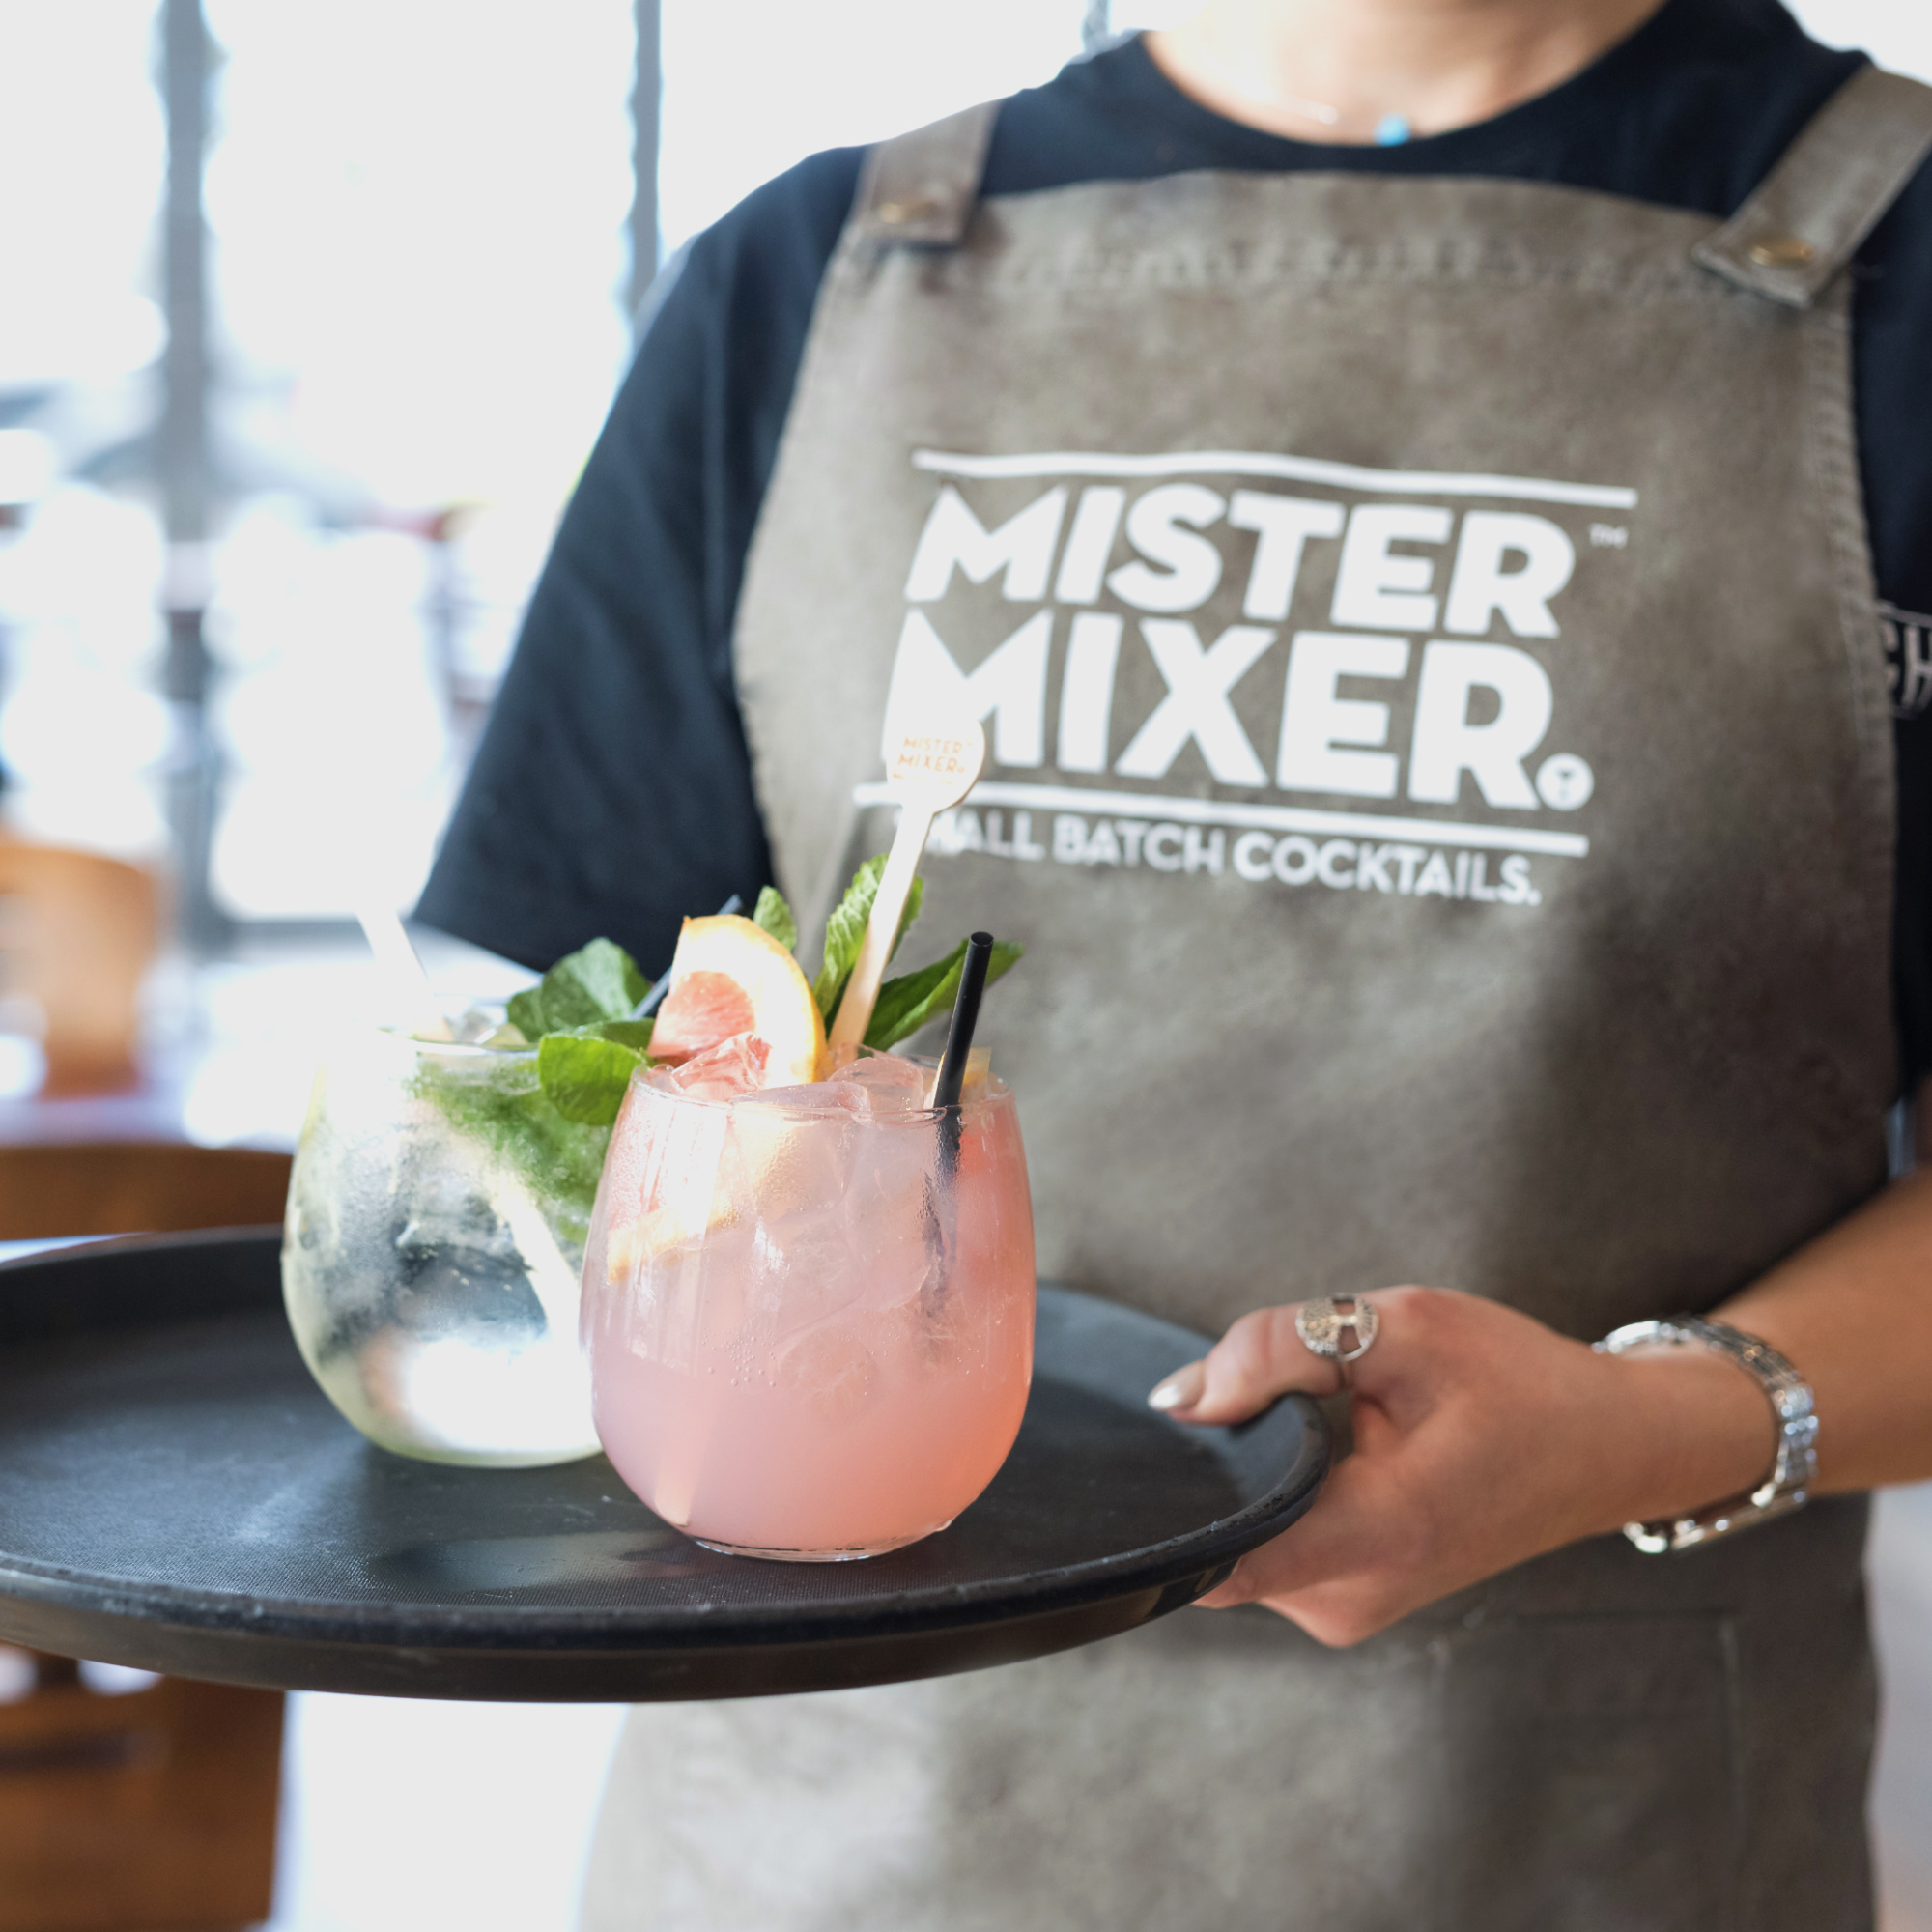 Mister Mixer Cocktails Apron 2 cocktails LOW Res.jpg